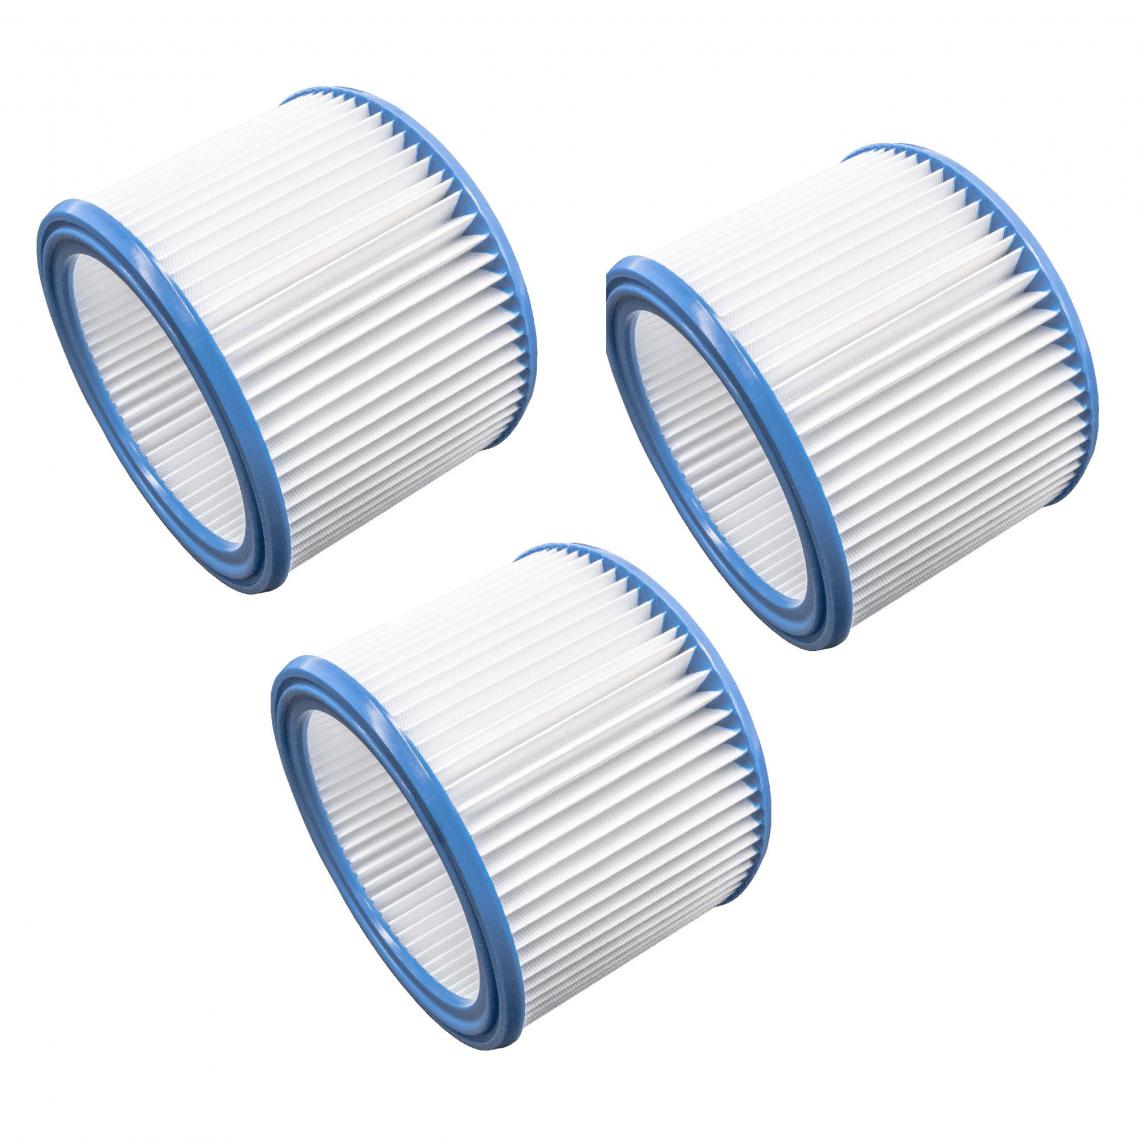 Vhbw - vhbw Set de filtres 3x Filtre plissé compatible avec Nilfisk Aero 31-21 Inox PC, 400, 440, 600, 640 aspirateur à sec ou humide - Filtre à cartouche - Accessoire entretien des sols